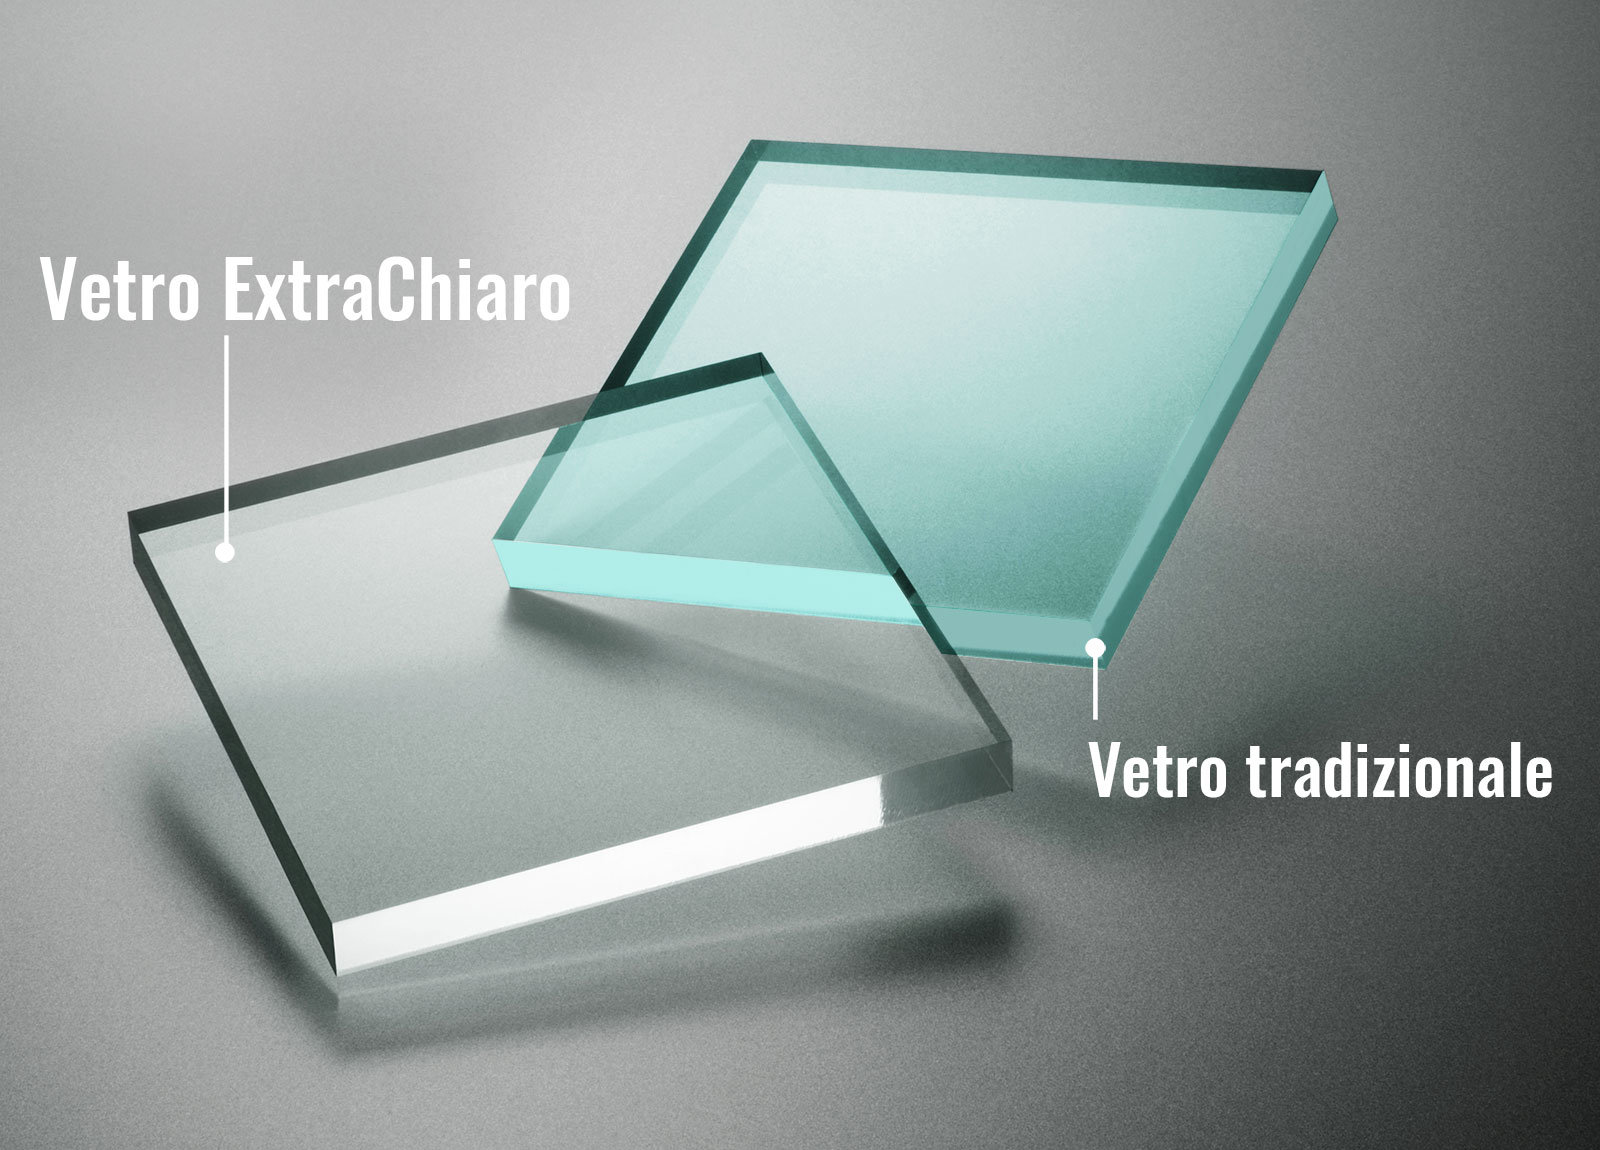 vetro extrachiaro differenza con vetro tradizionale